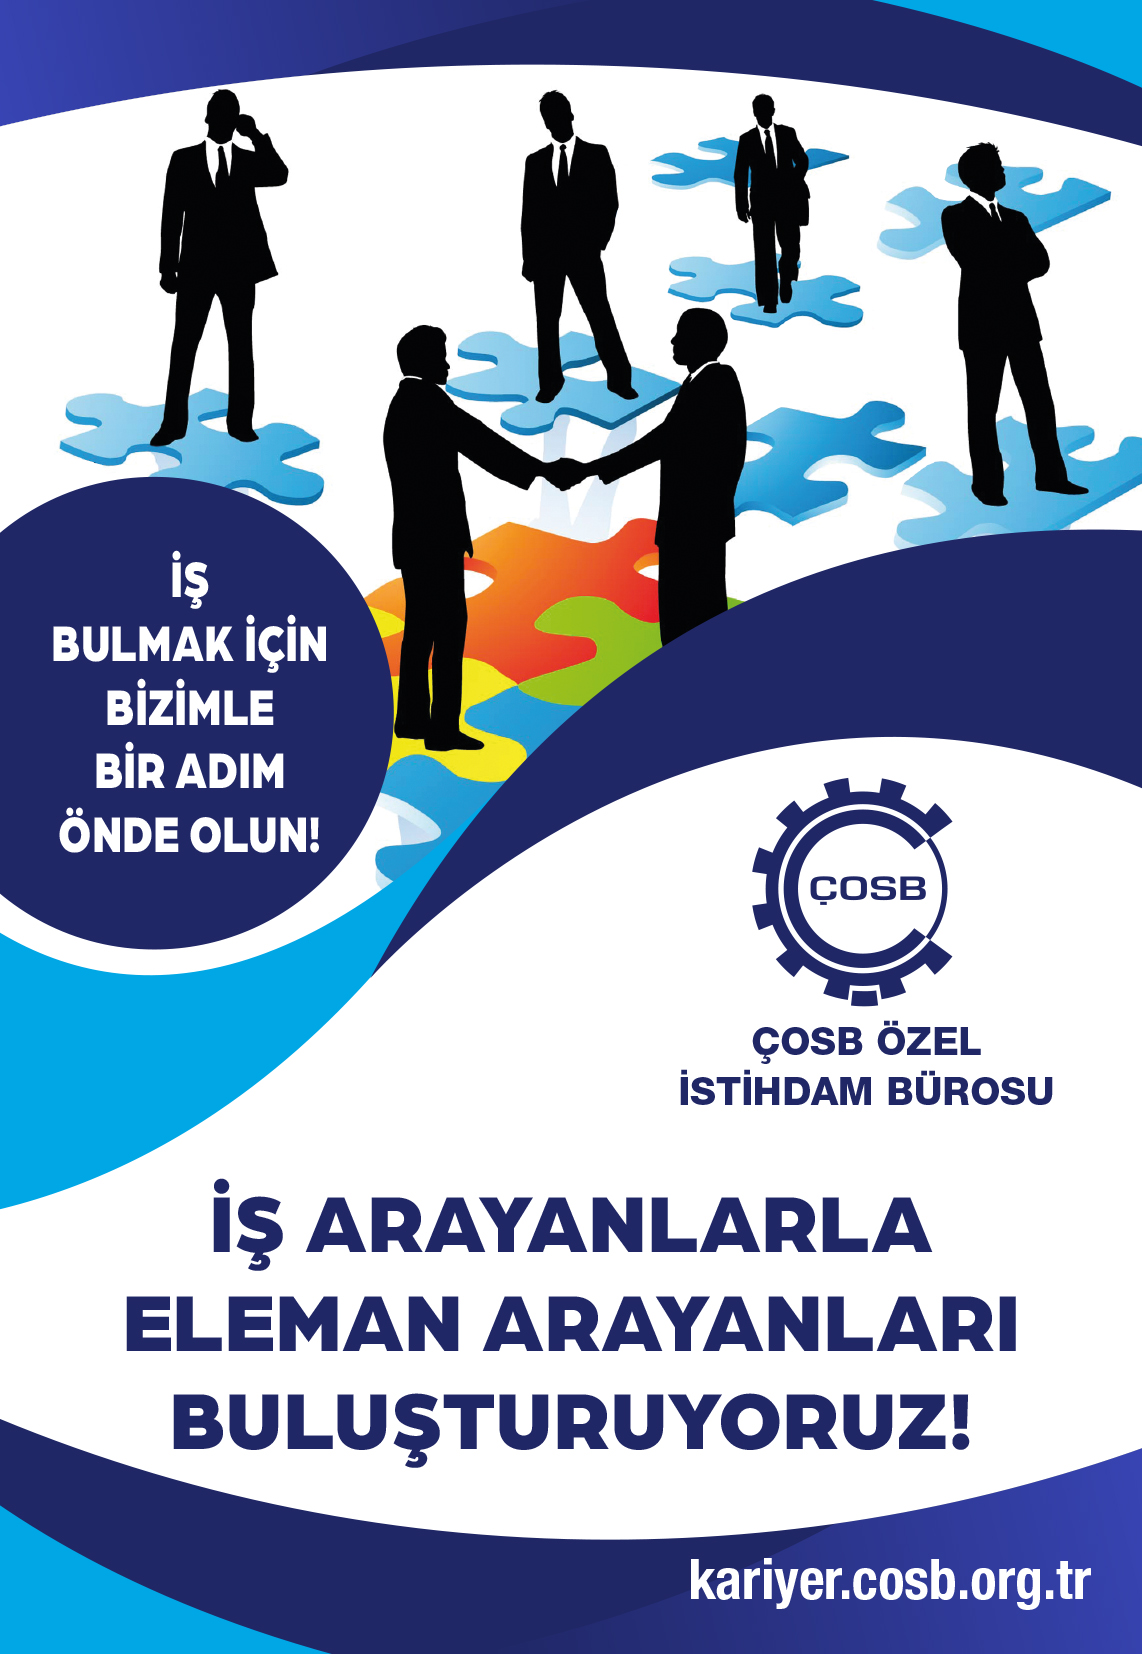 Çerkezköy Organize Sanayi Bölgesi Özel İstihdam Bürosu Aday Başvurularını Dijital Ortamda Almaya Devam Ediyor